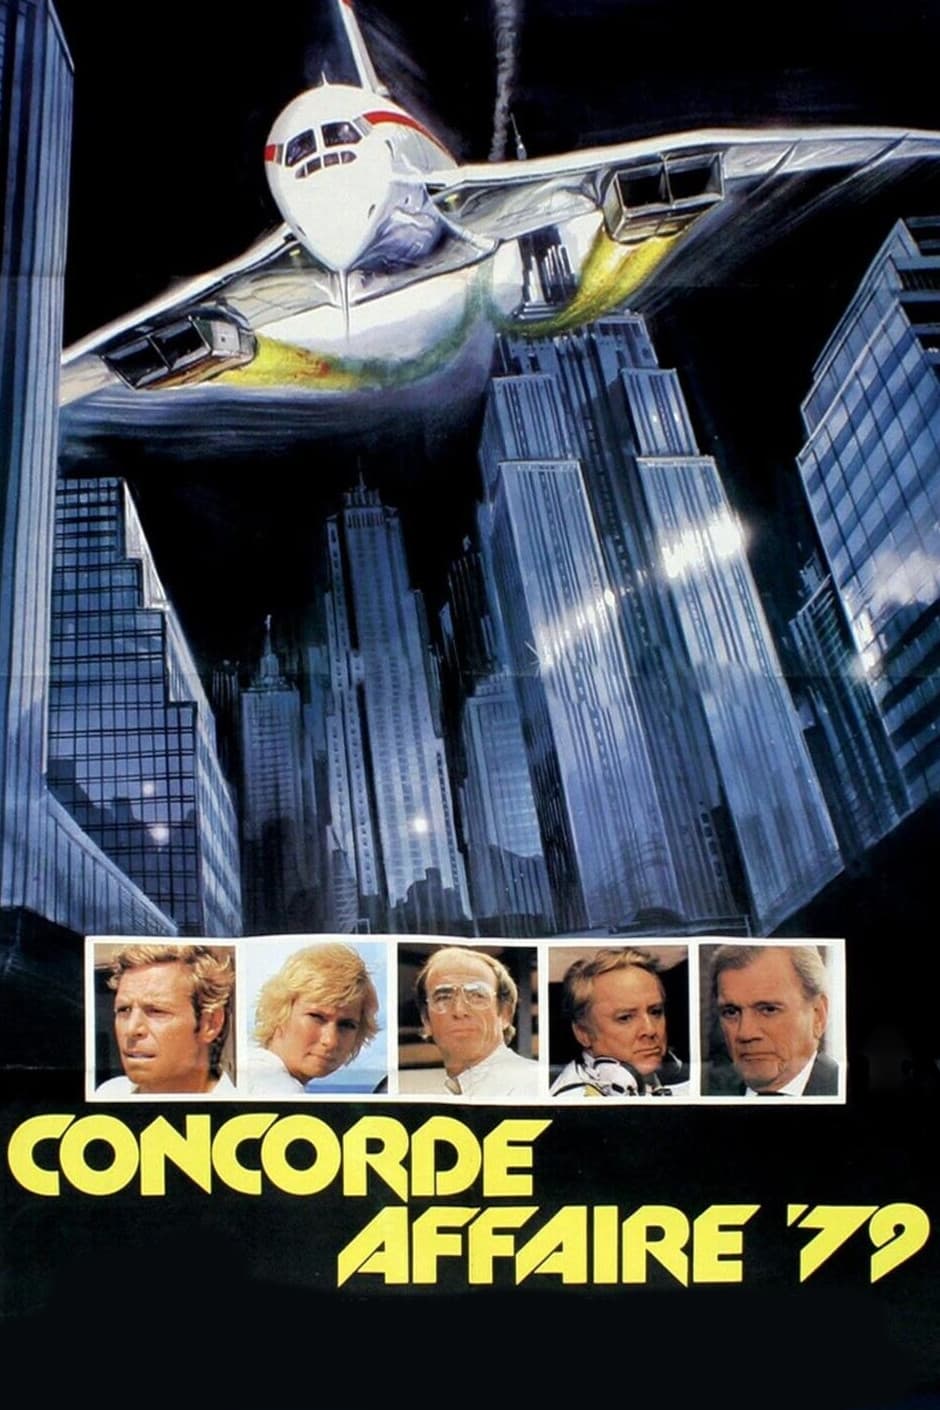 SOS Concorde (1979)